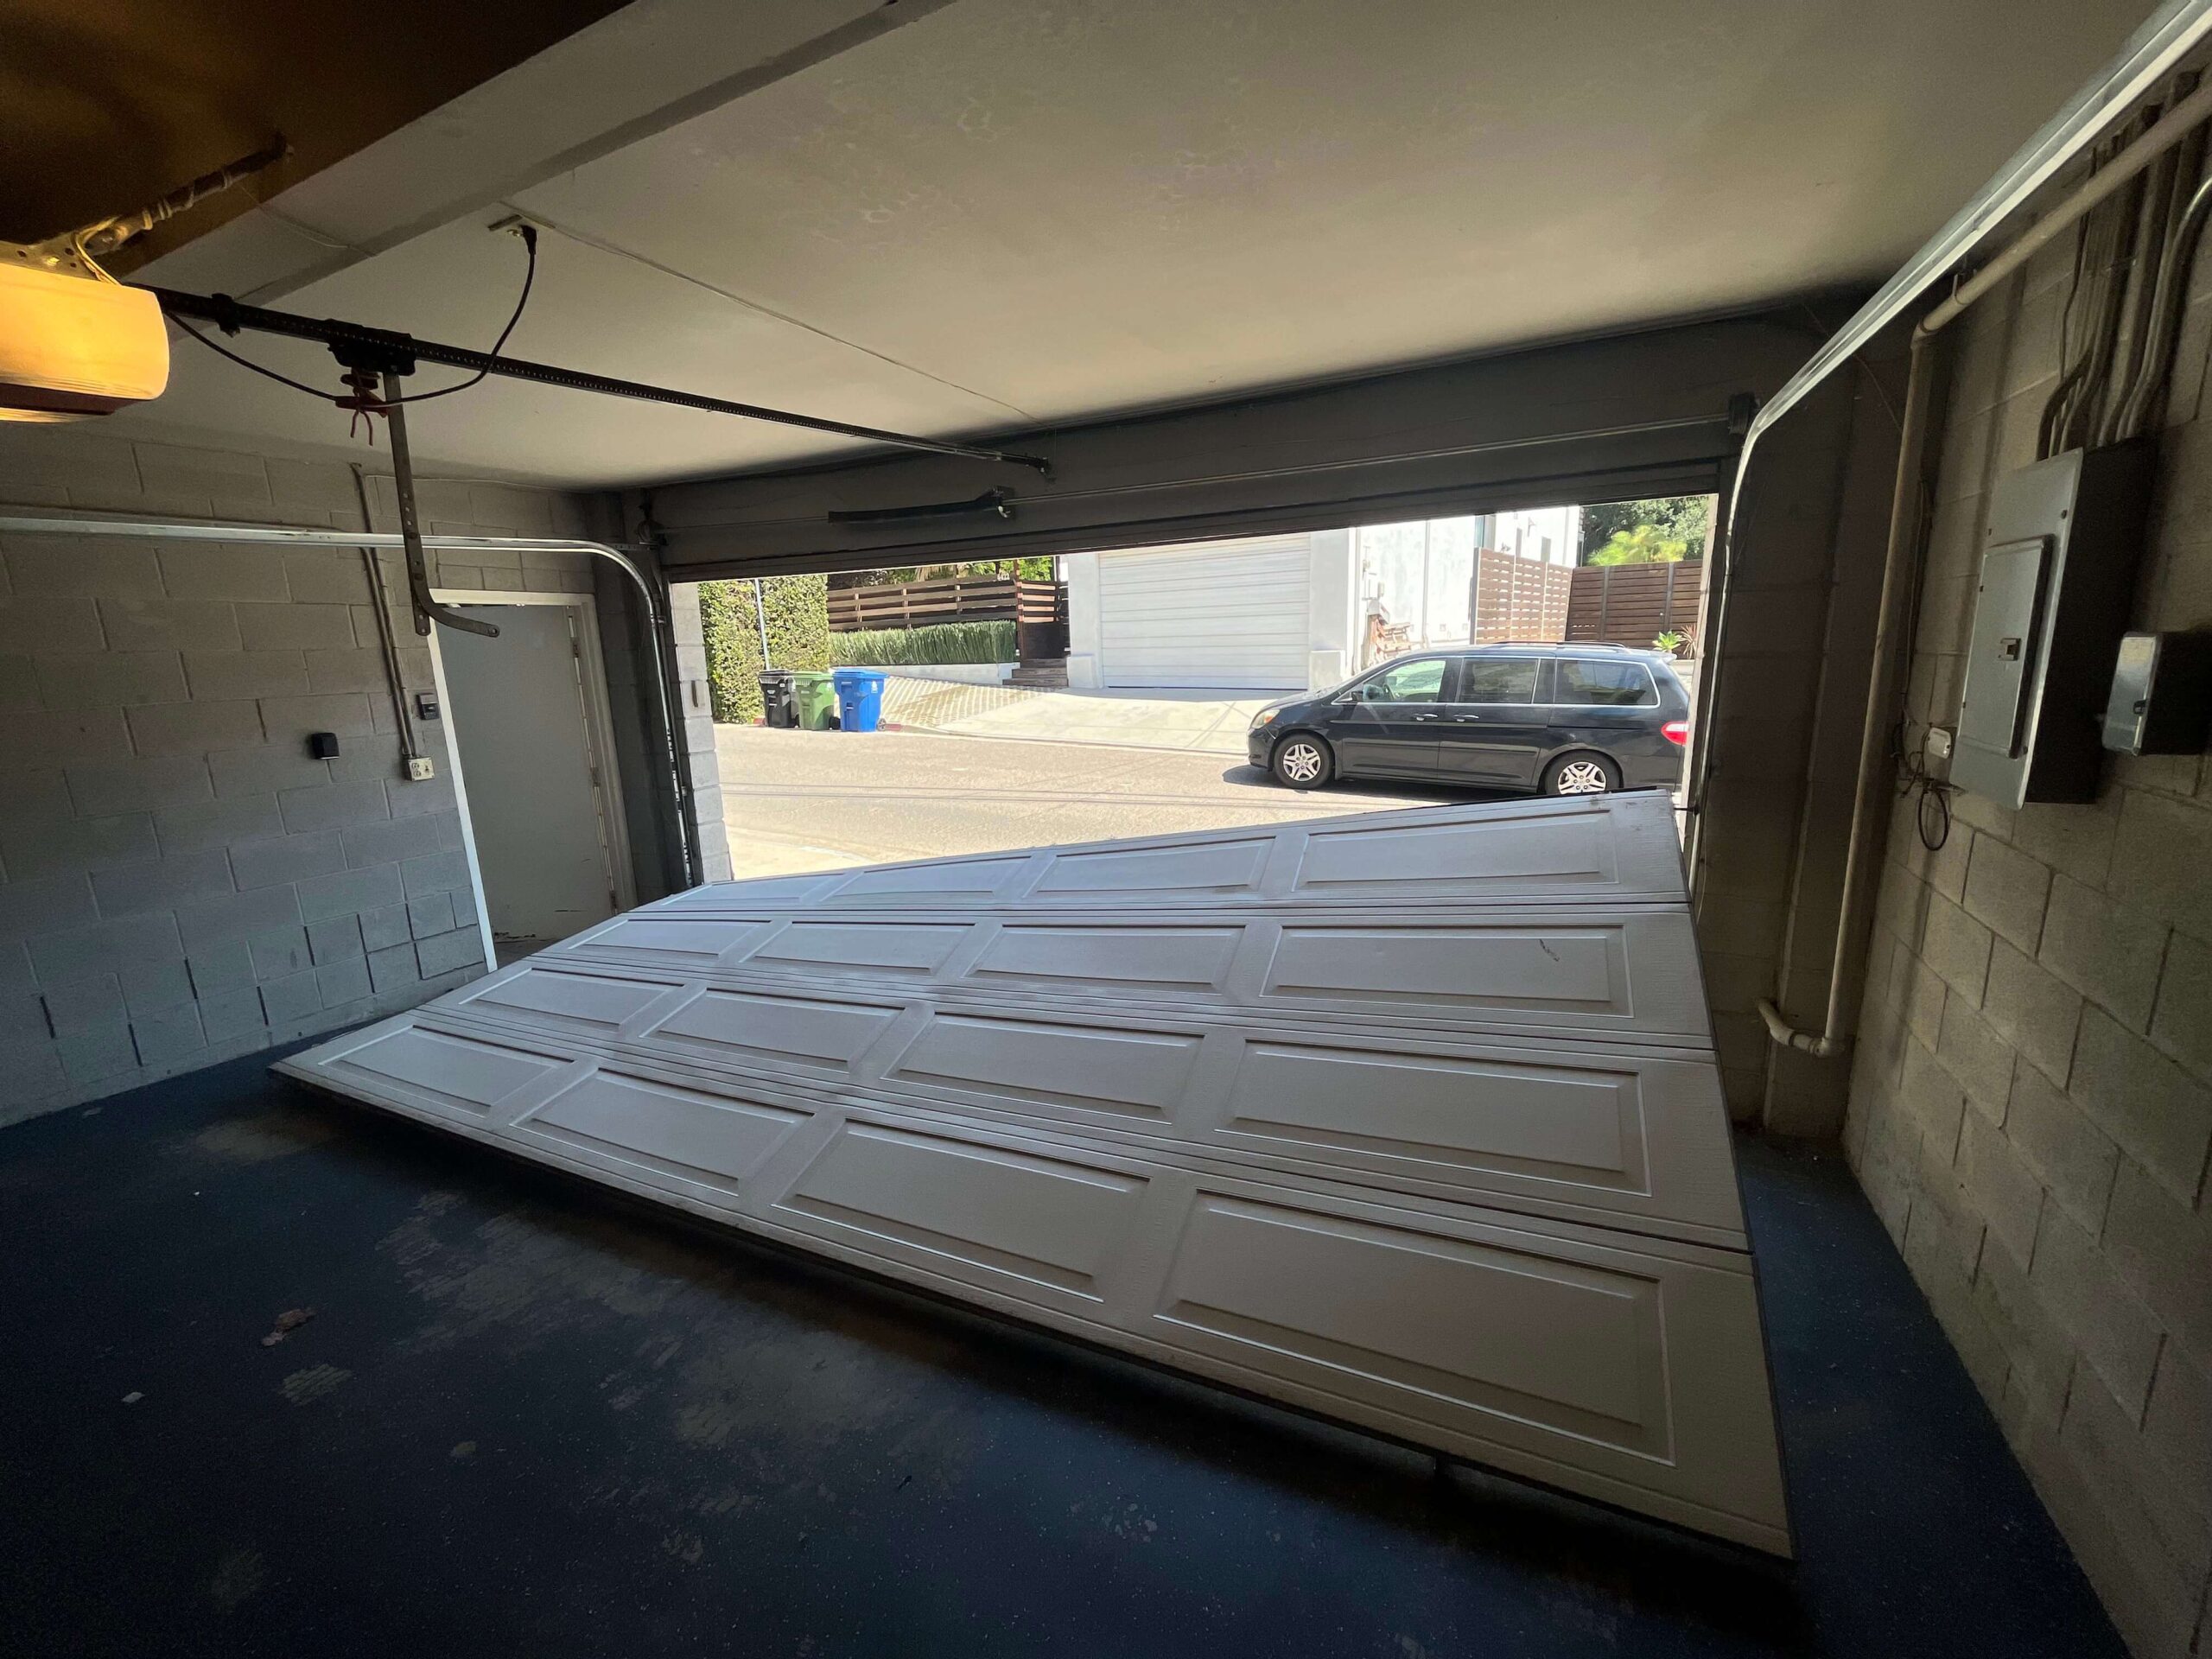 Garage Door Off Track Repair